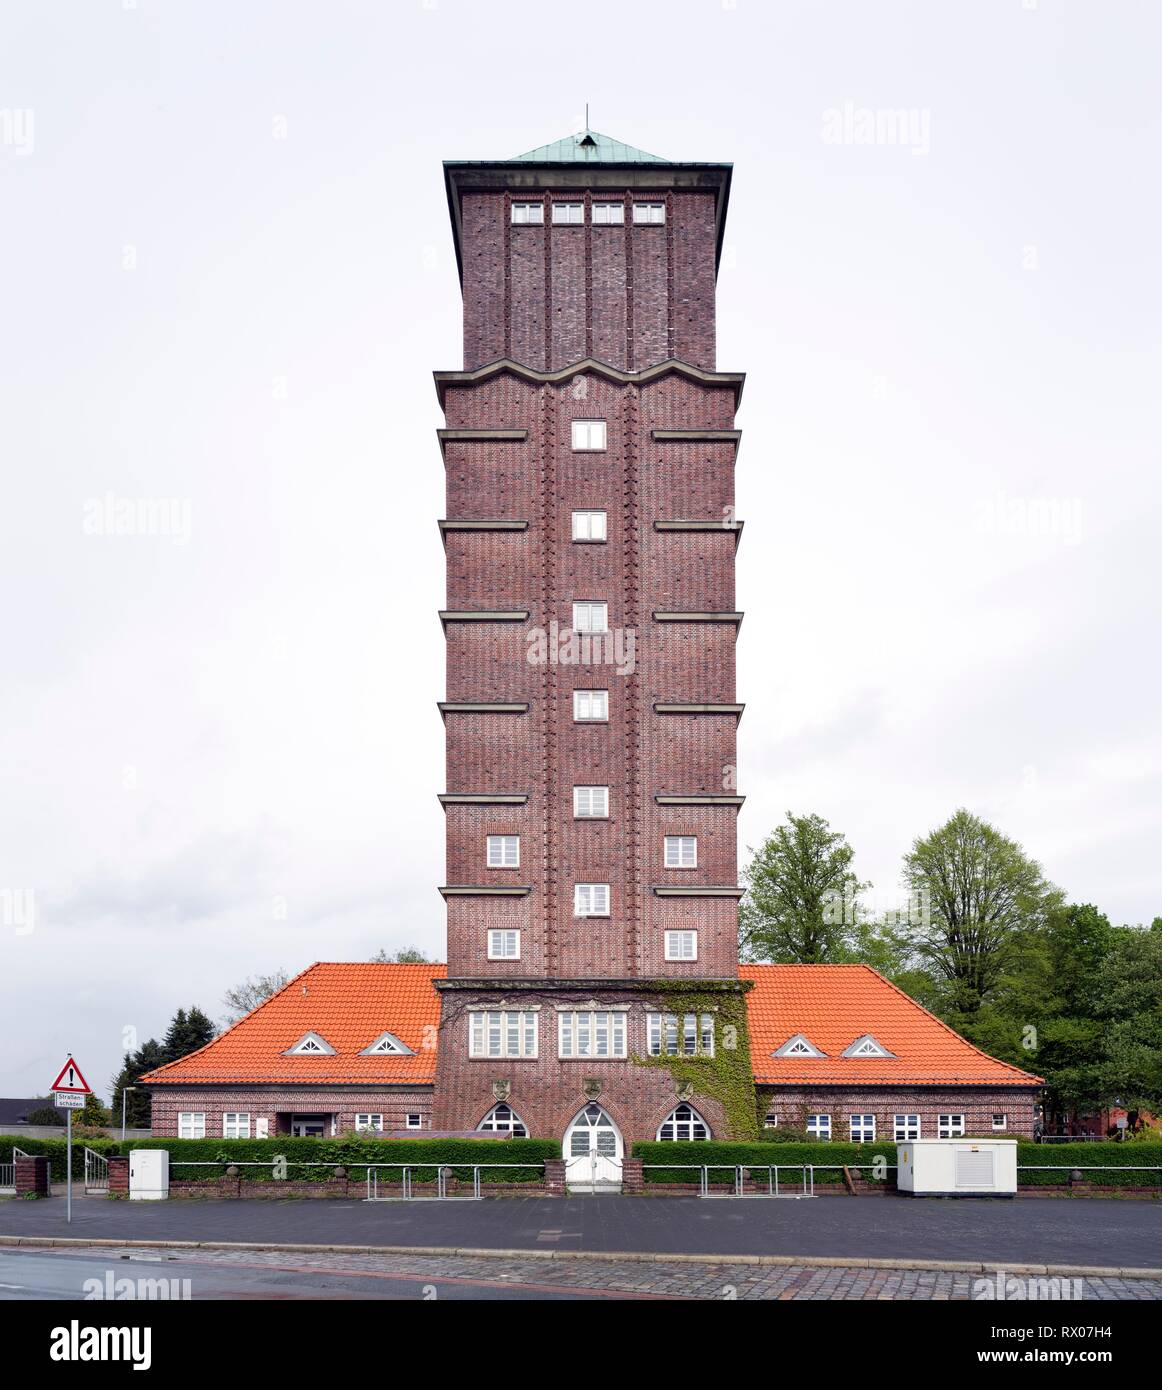 Château d'eau, monument architectural, l'expressionnisme de brique, Blumenthal, Brême, Allemagne Banque D'Images